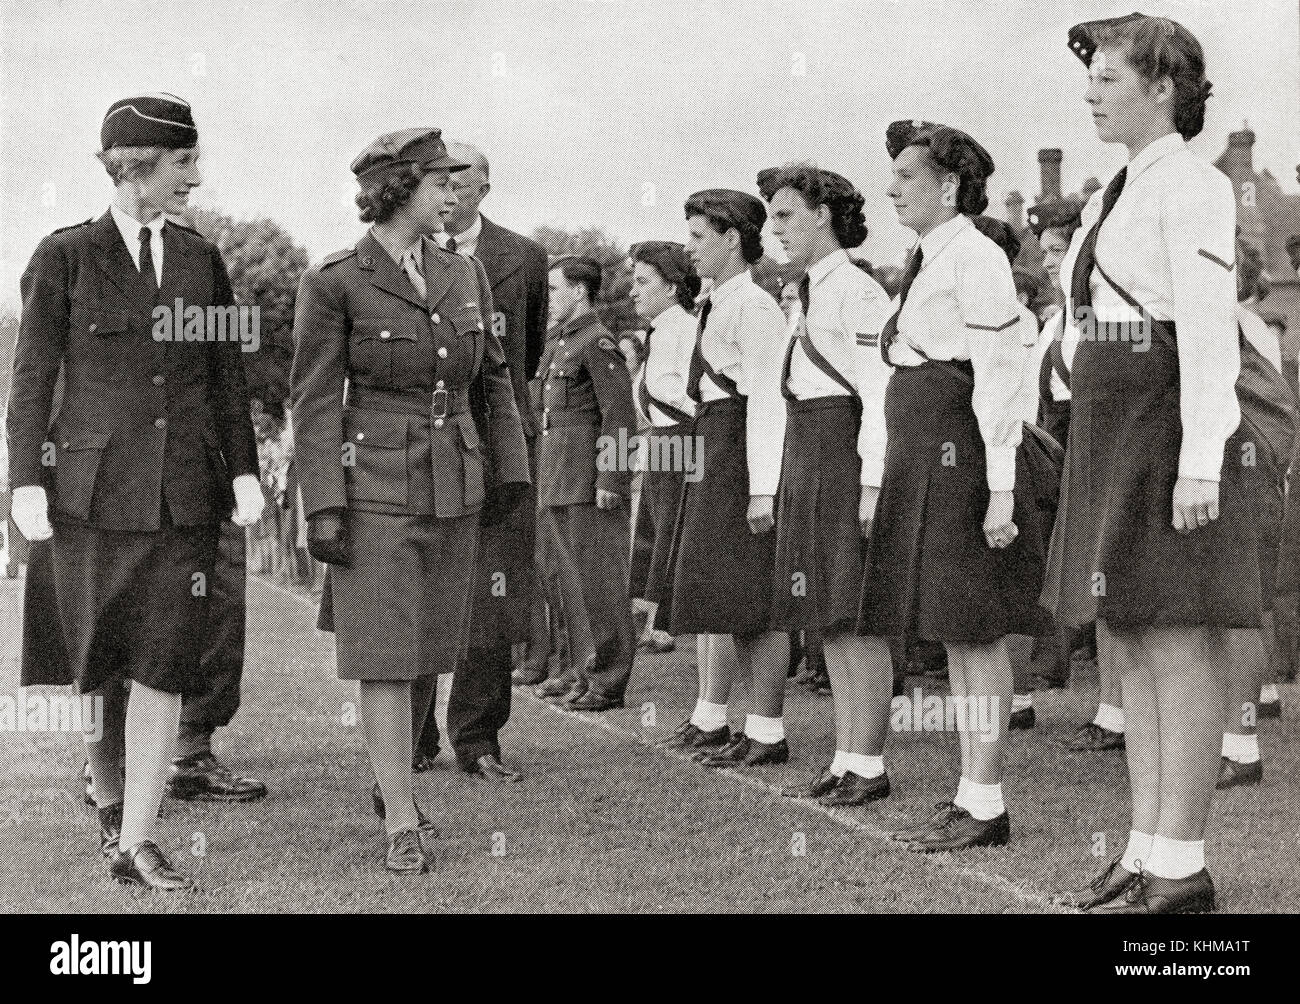 Prinzessin Elizabeth inspiziert das Mädchen-Trainingskorps, 1945. Prinzessin Elisabeth von York, zukünftige Elisabeth II., 1926 - 2022. Königin des Vereinigten Königreichs. Stockfoto